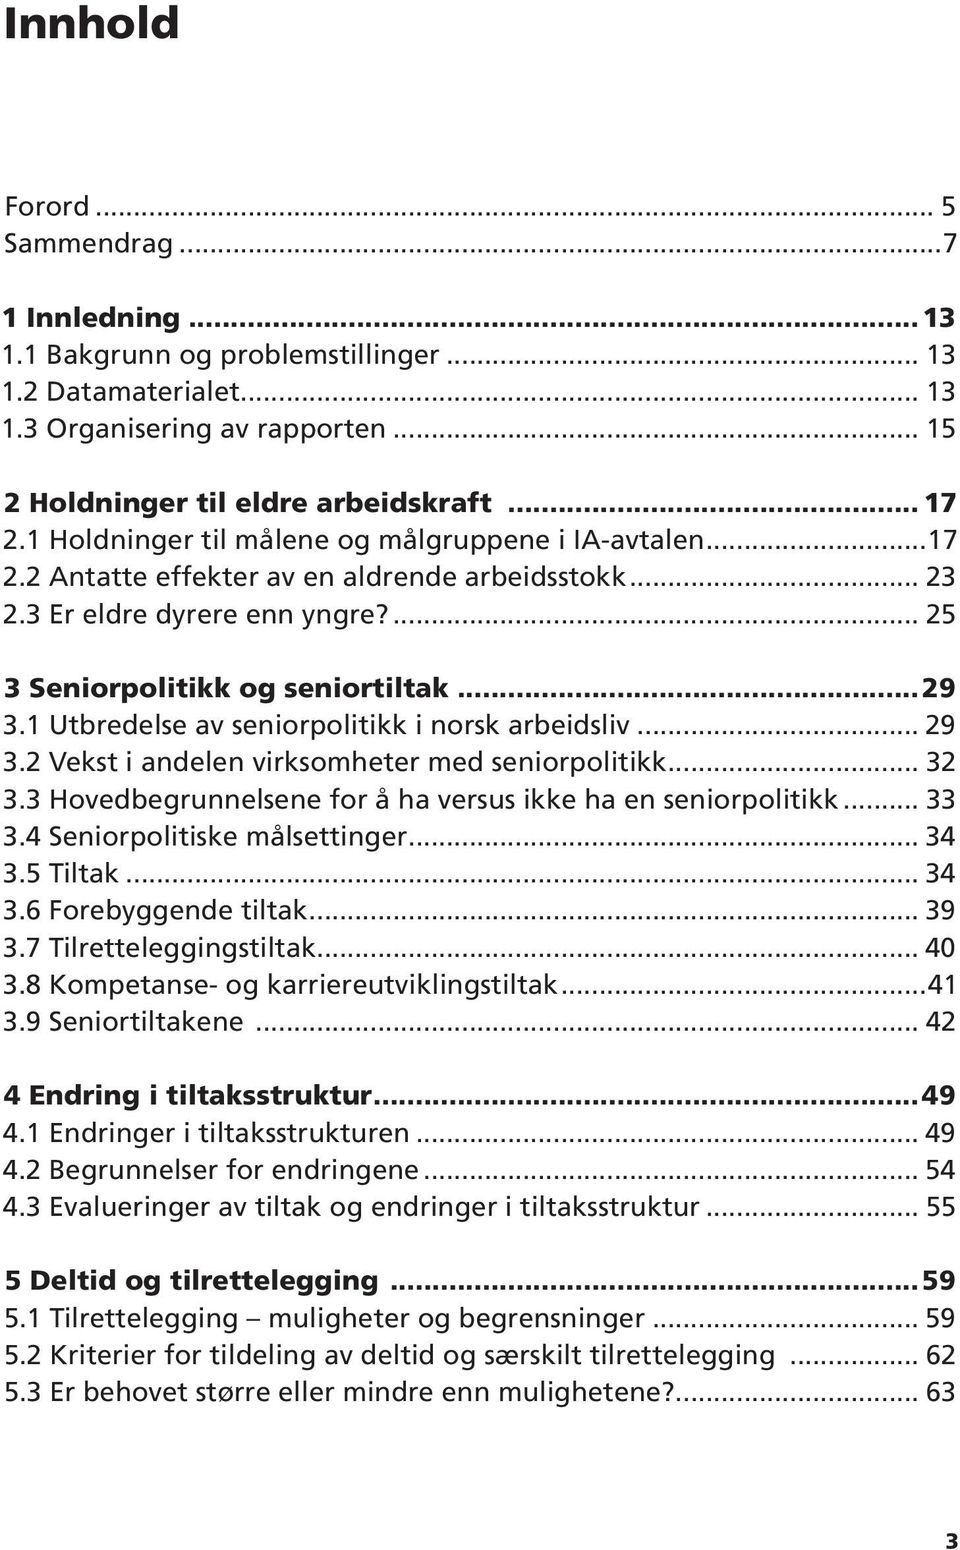 1 Utbredelse av seniorpolitikk i norsk arbeidsliv... 29 3.2 Vekst i andelen virksomheter med seniorpolitikk... 32 3.3 Hovedbegrunnelsene for å ha versus ikke ha en seniorpolitikk... 33 3.